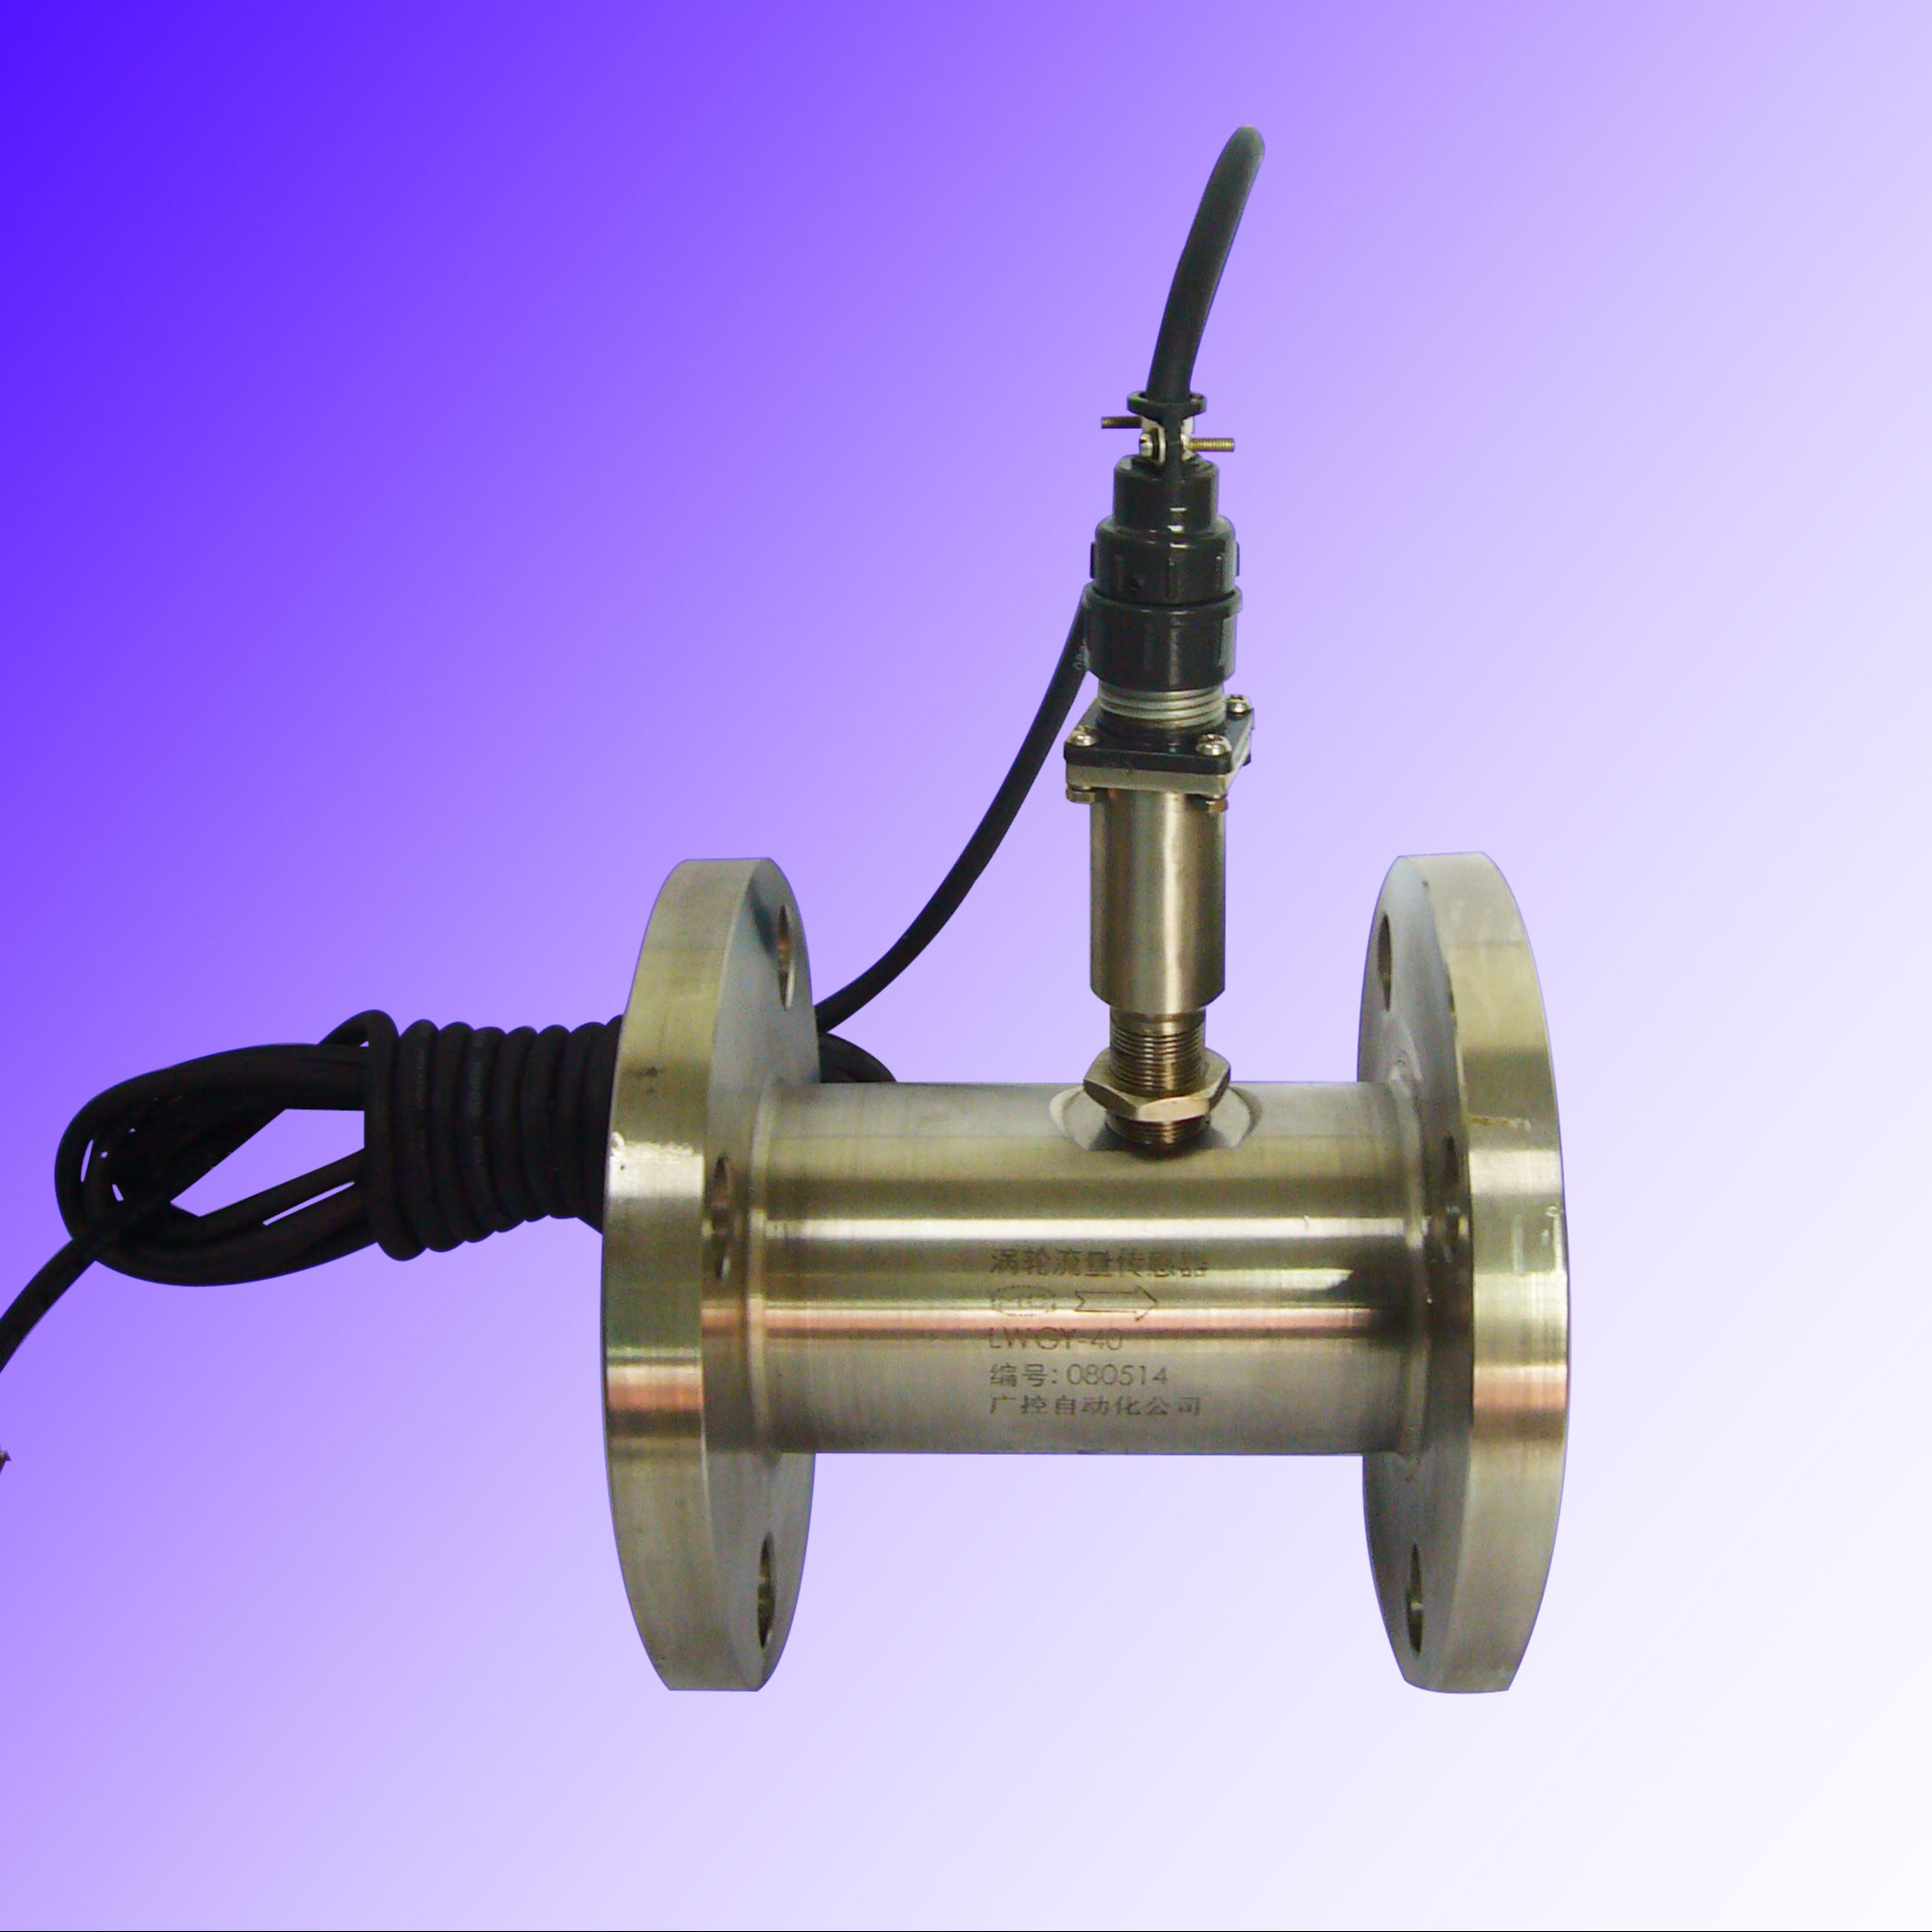 LWGY-50DN50智能液体涡轮流量计涡轮流量传感器变送器防爆高压输出脉冲或电流信号